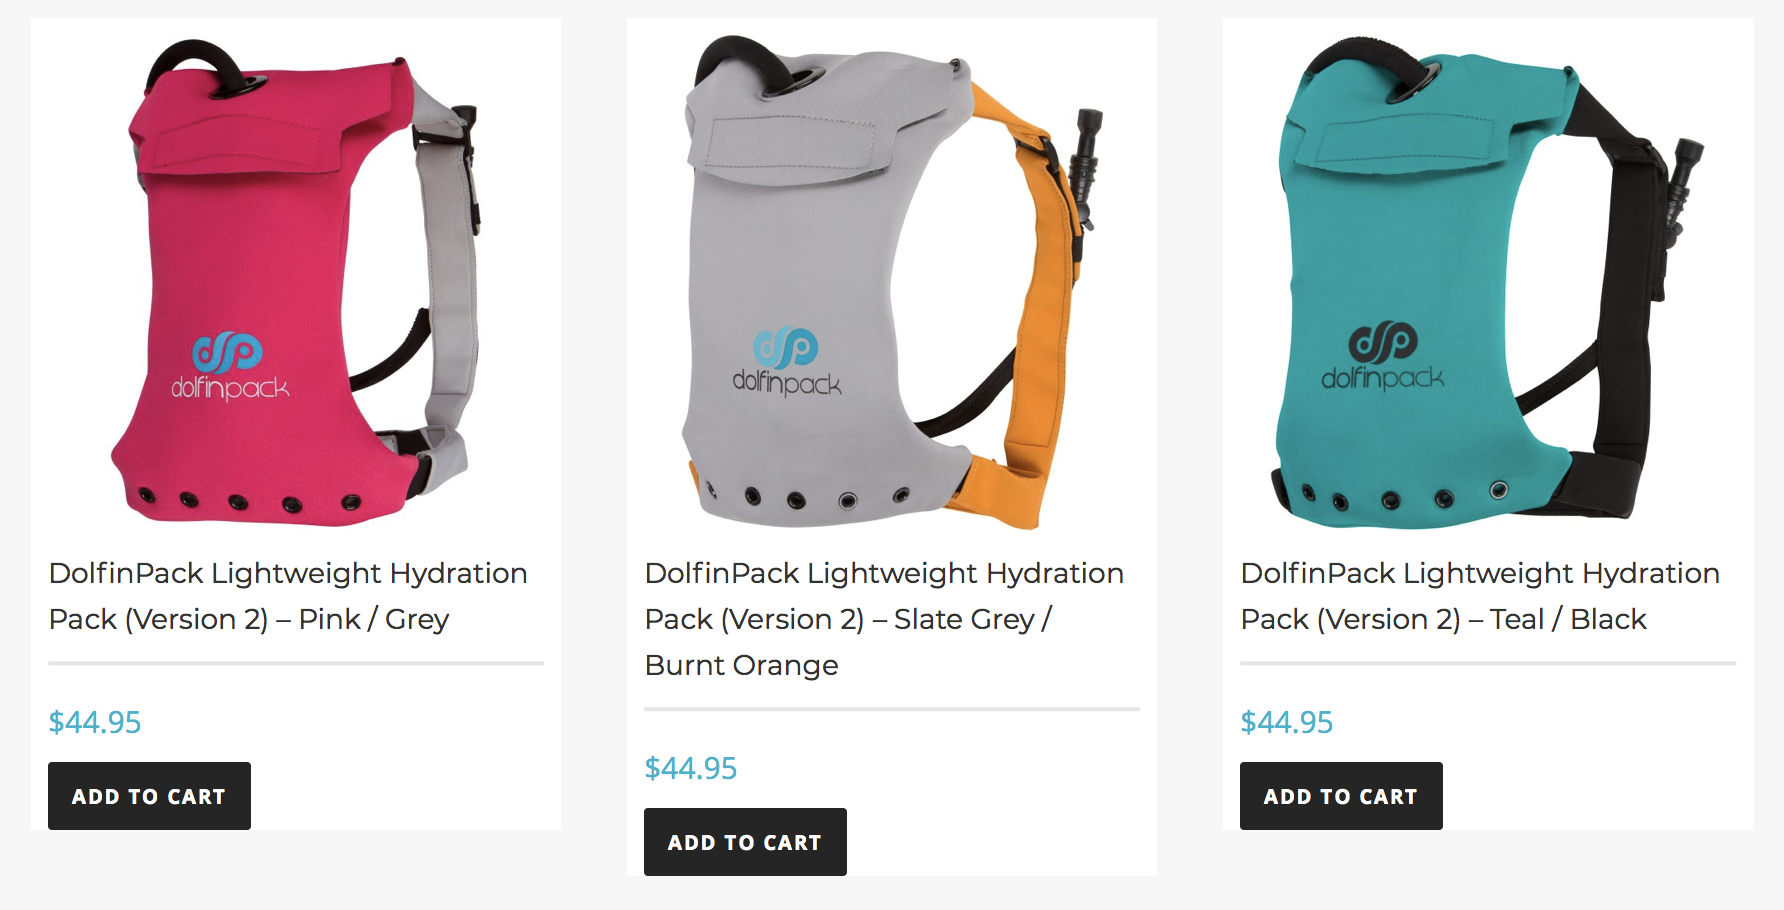 Dolfinpack Hydration packs